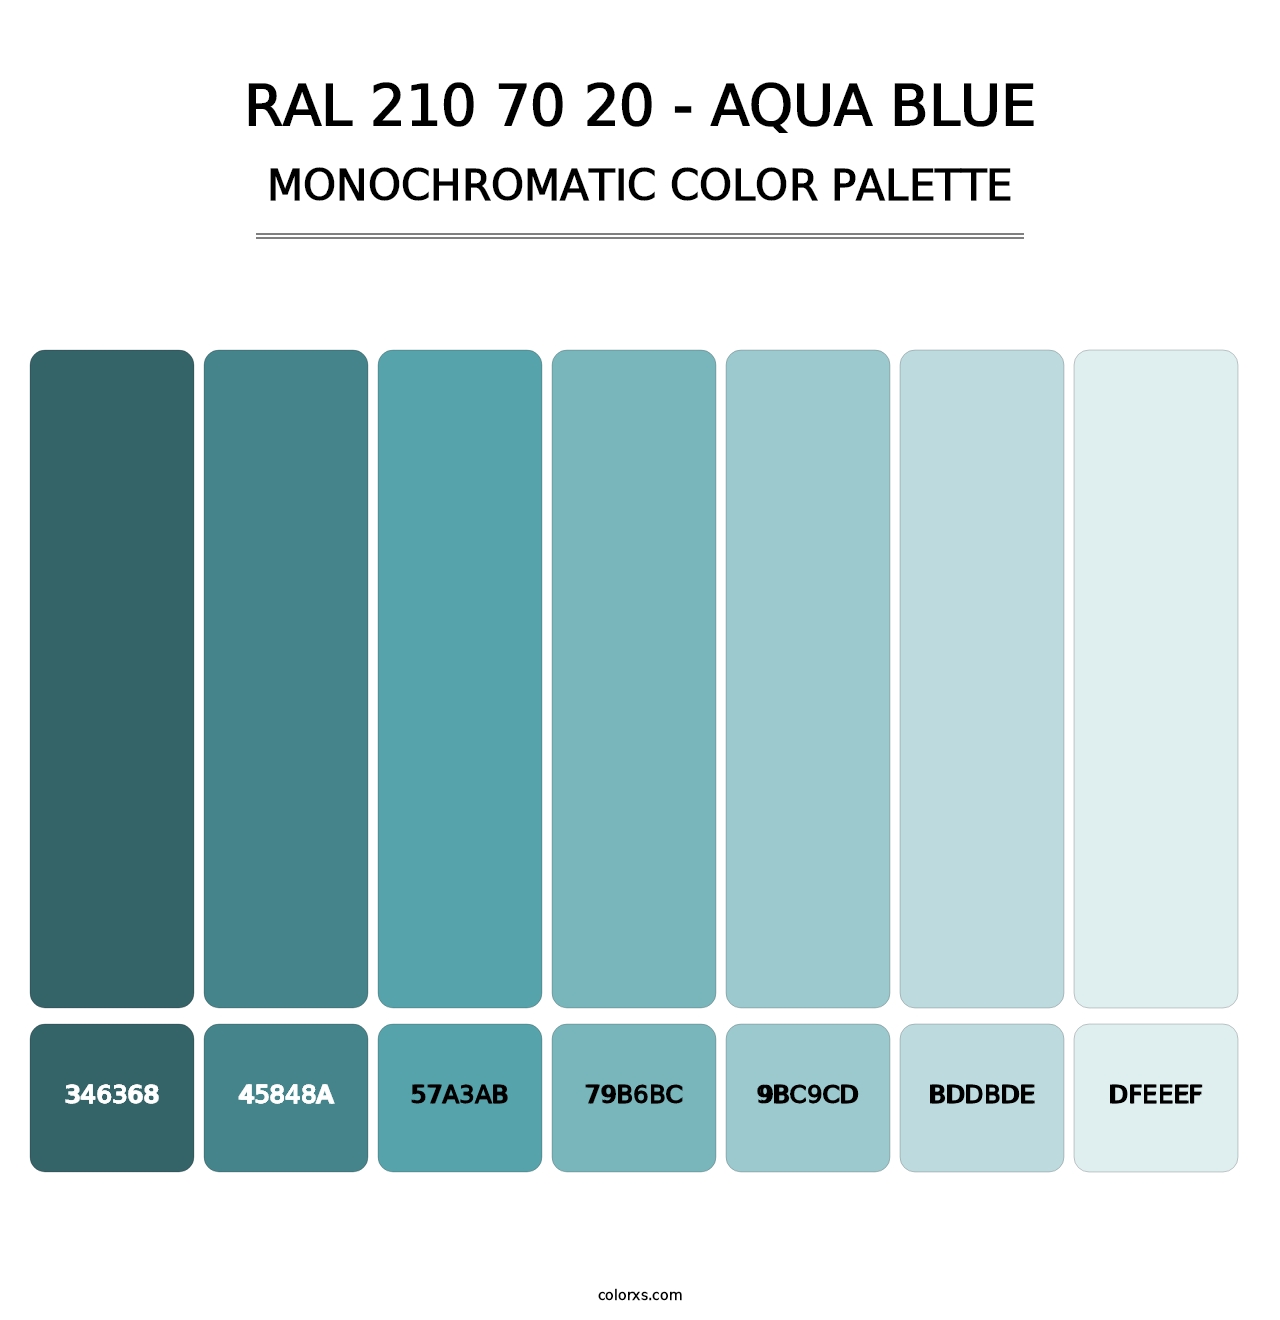 RAL 210 70 20 - Aqua Blue - Monochromatic Color Palette